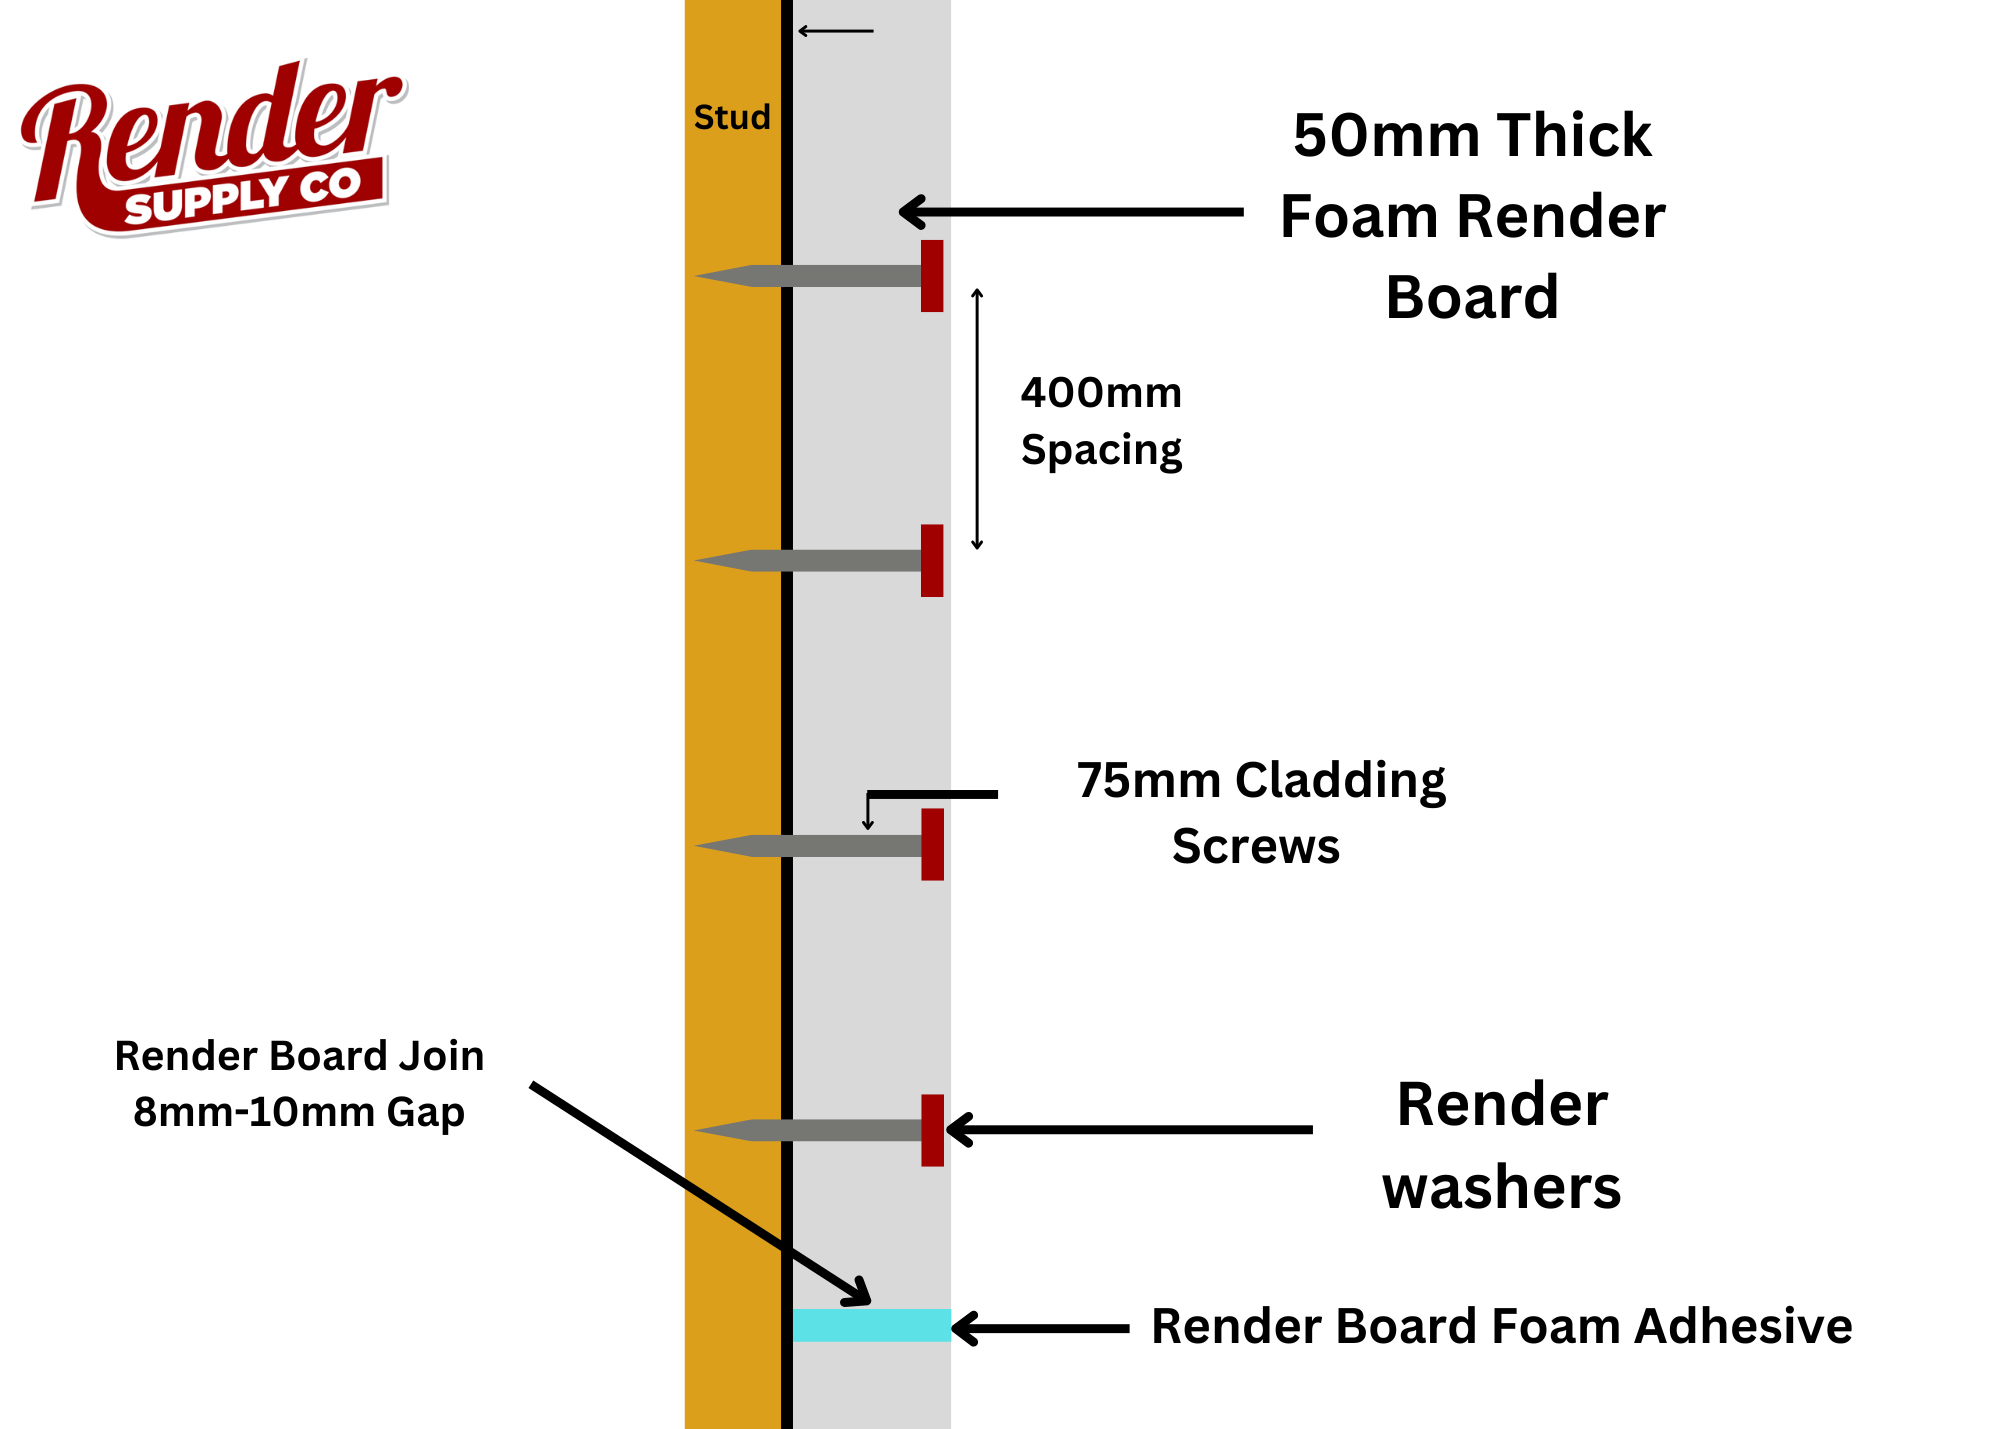 Render Board Screws 75mm